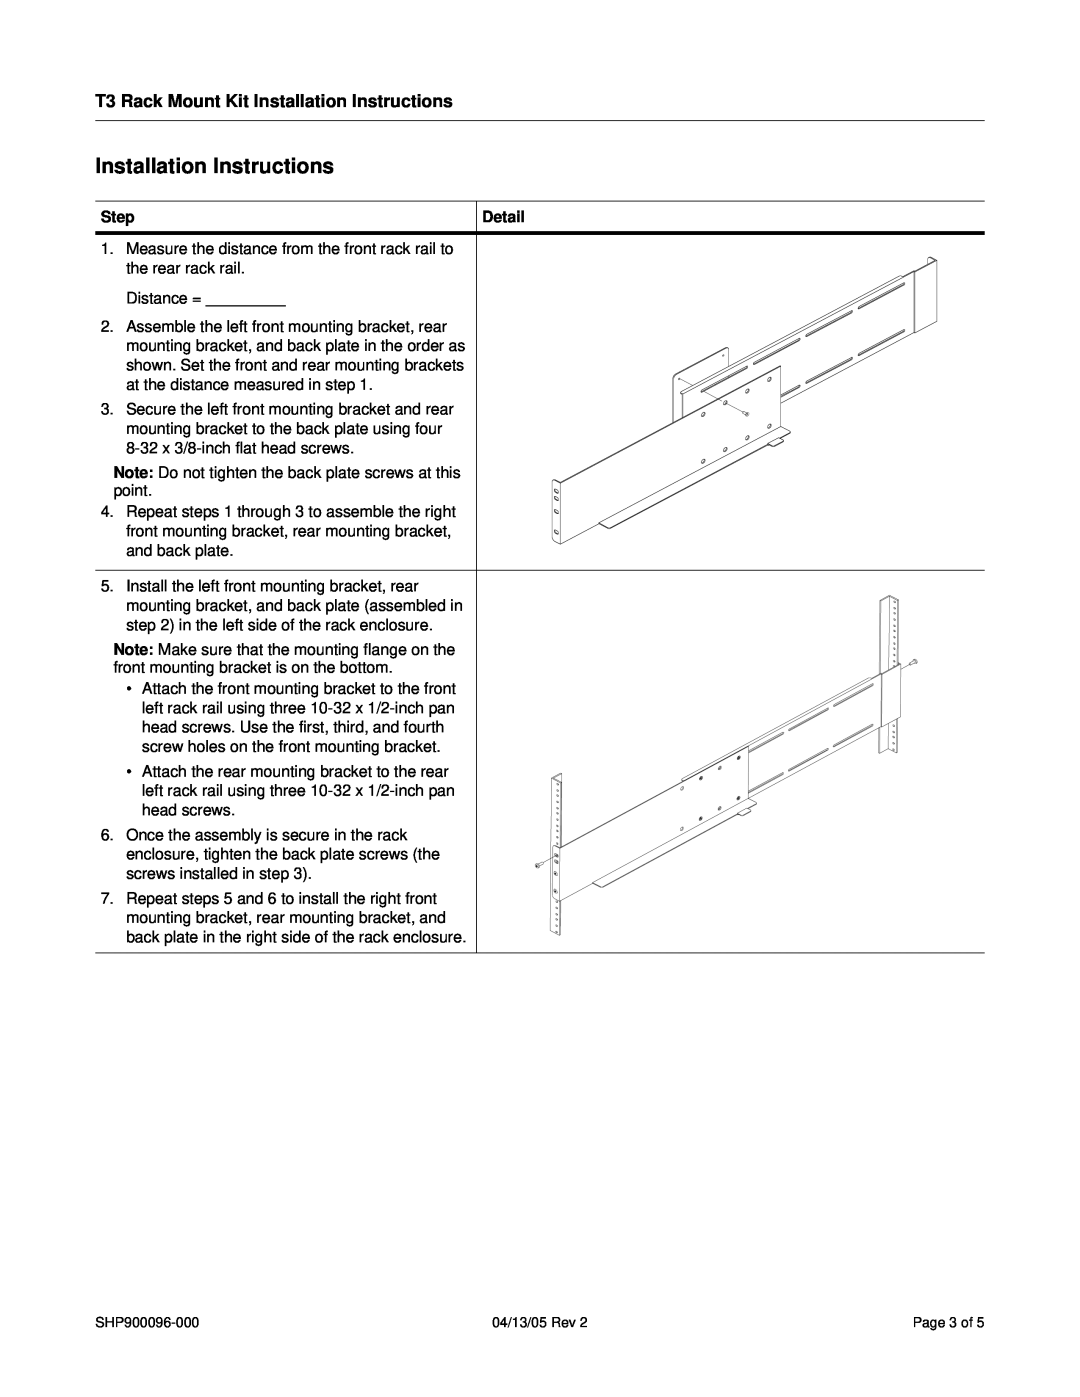 SharkRack T3-R19-H installation instructions T3 Rack Mount Kit Installation Instructions, Step, Detail 